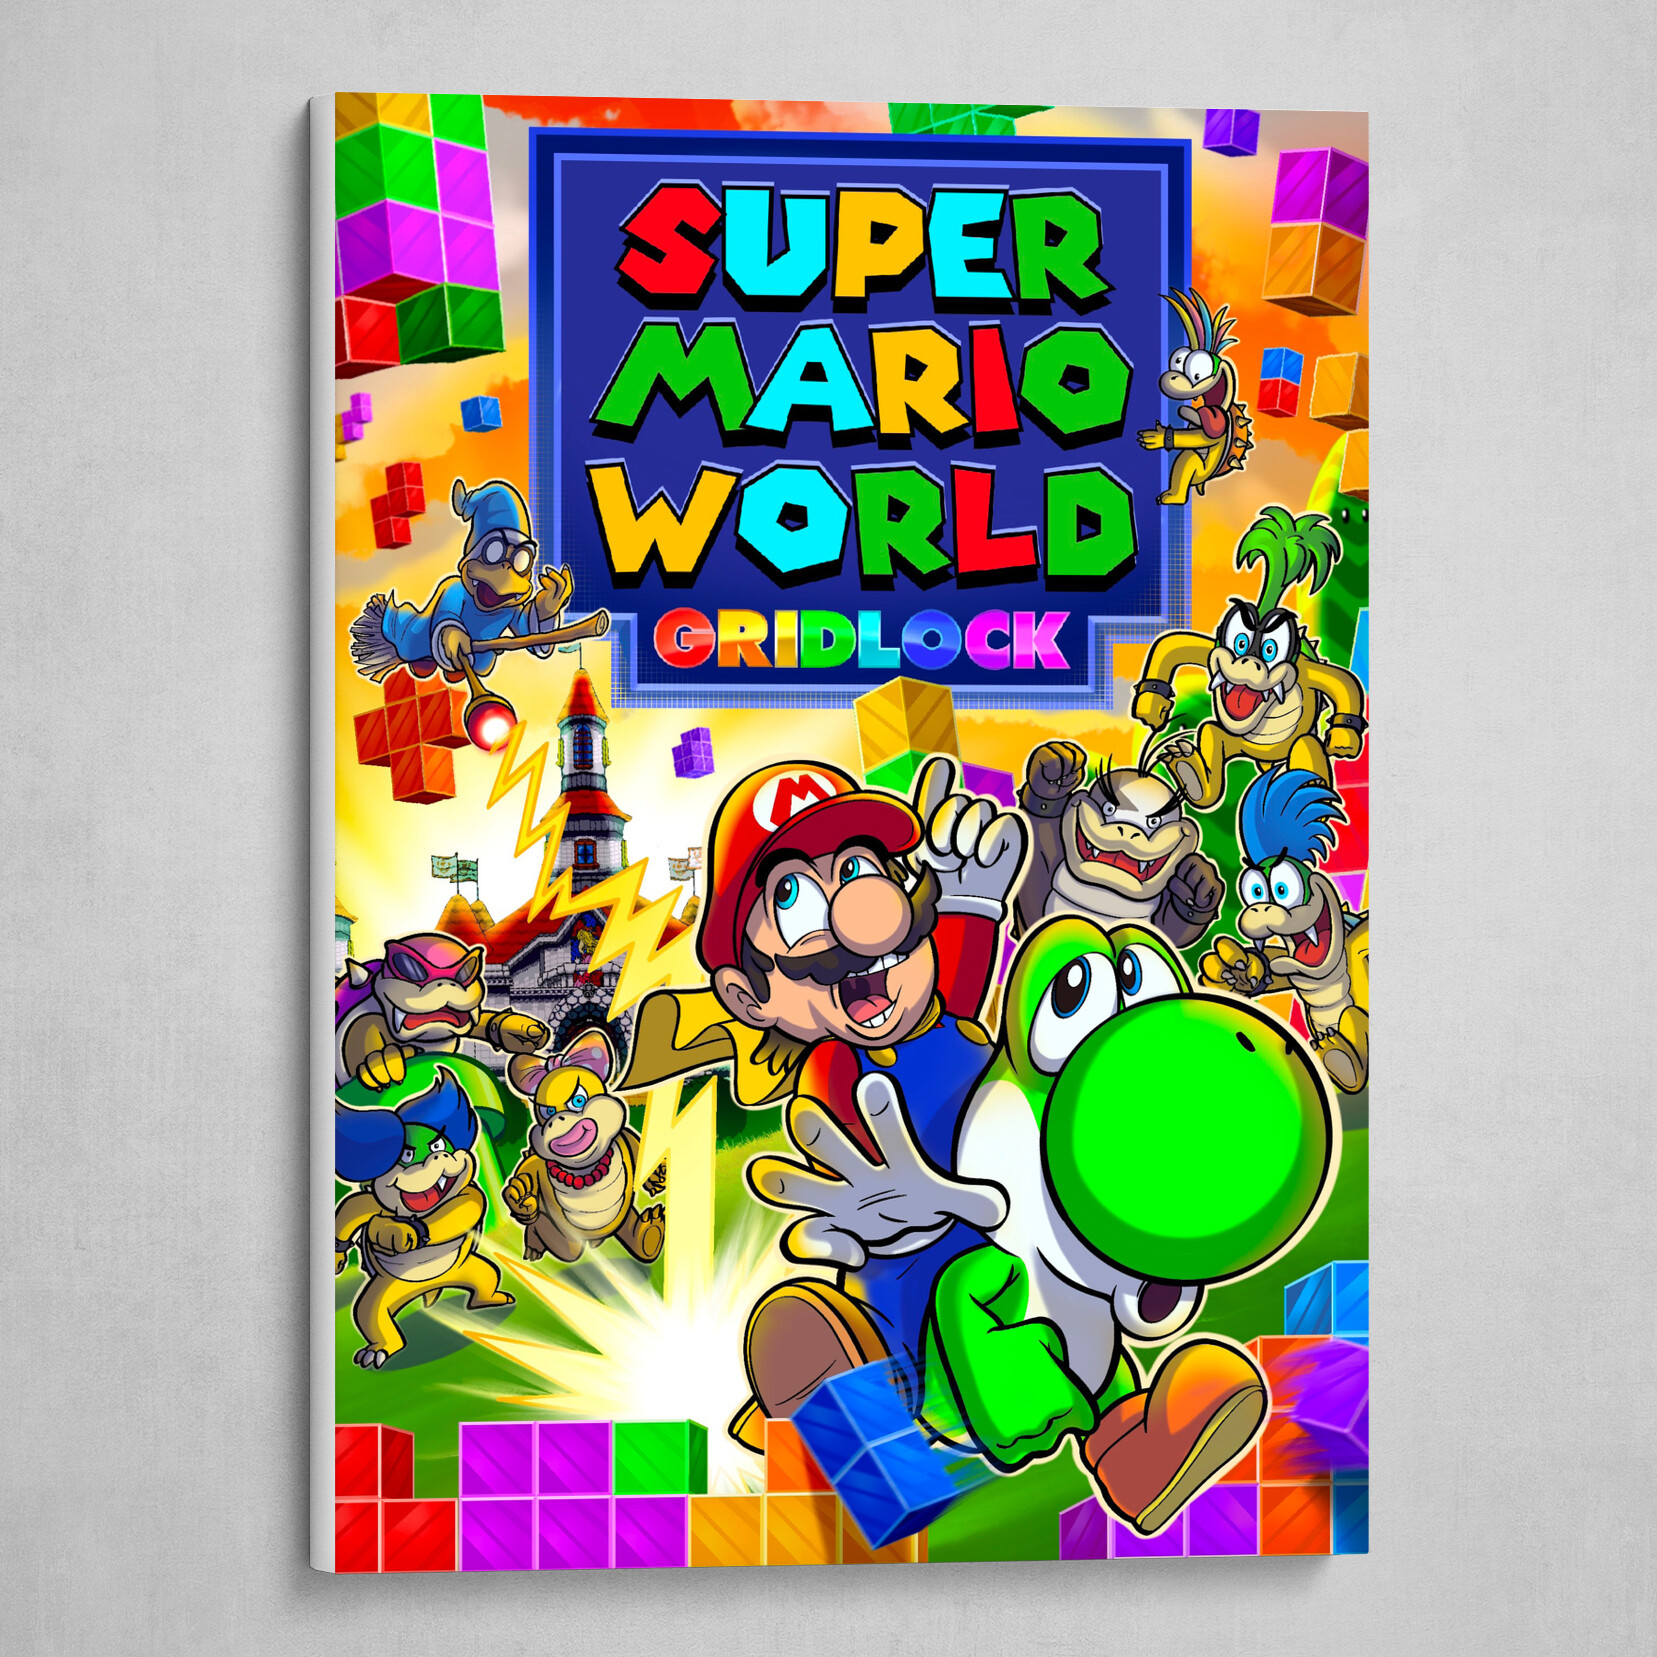 Super Mario World Gridlock by Matthew Kim